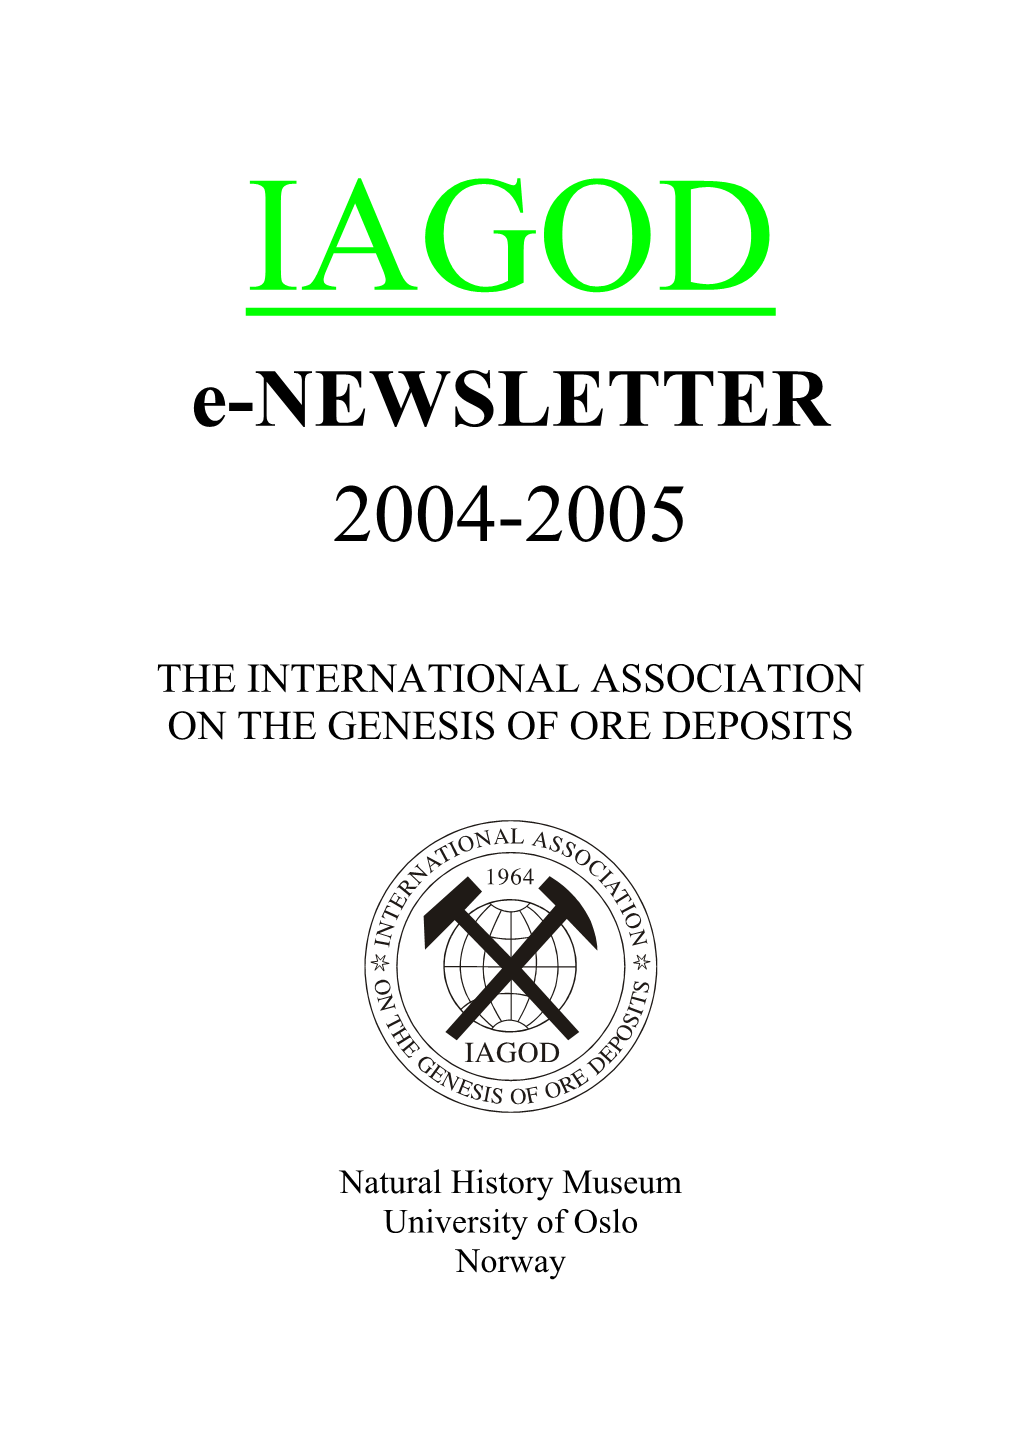 IAGOD E-Newsletter 2004-2005